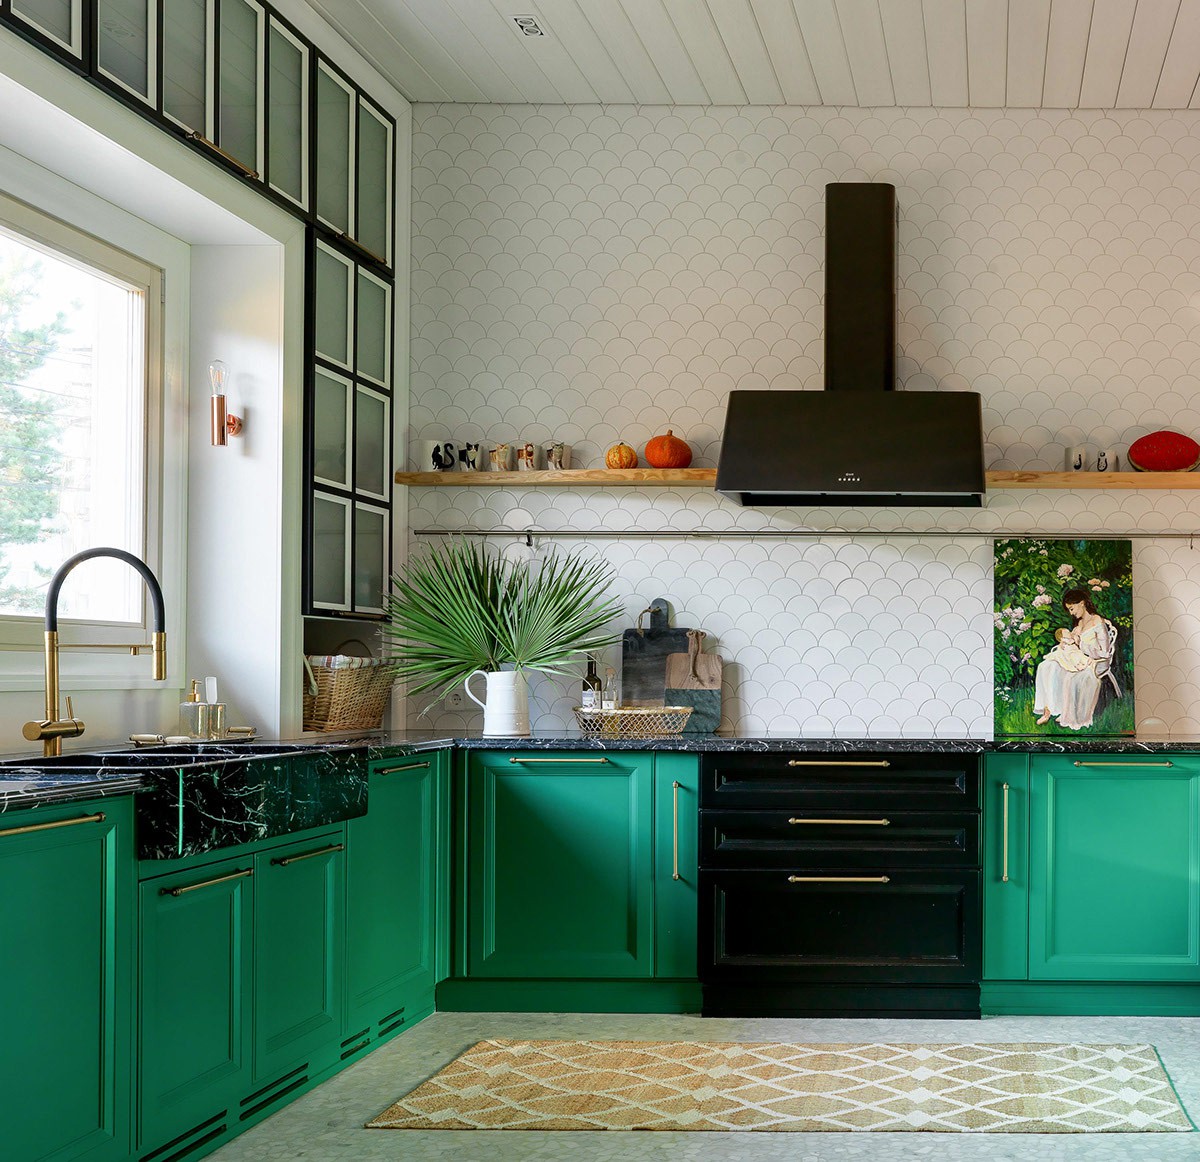 Hình ảnh một góc phòng bếp với tủ màu xanh ngọc, tường màu trắng hài hòa